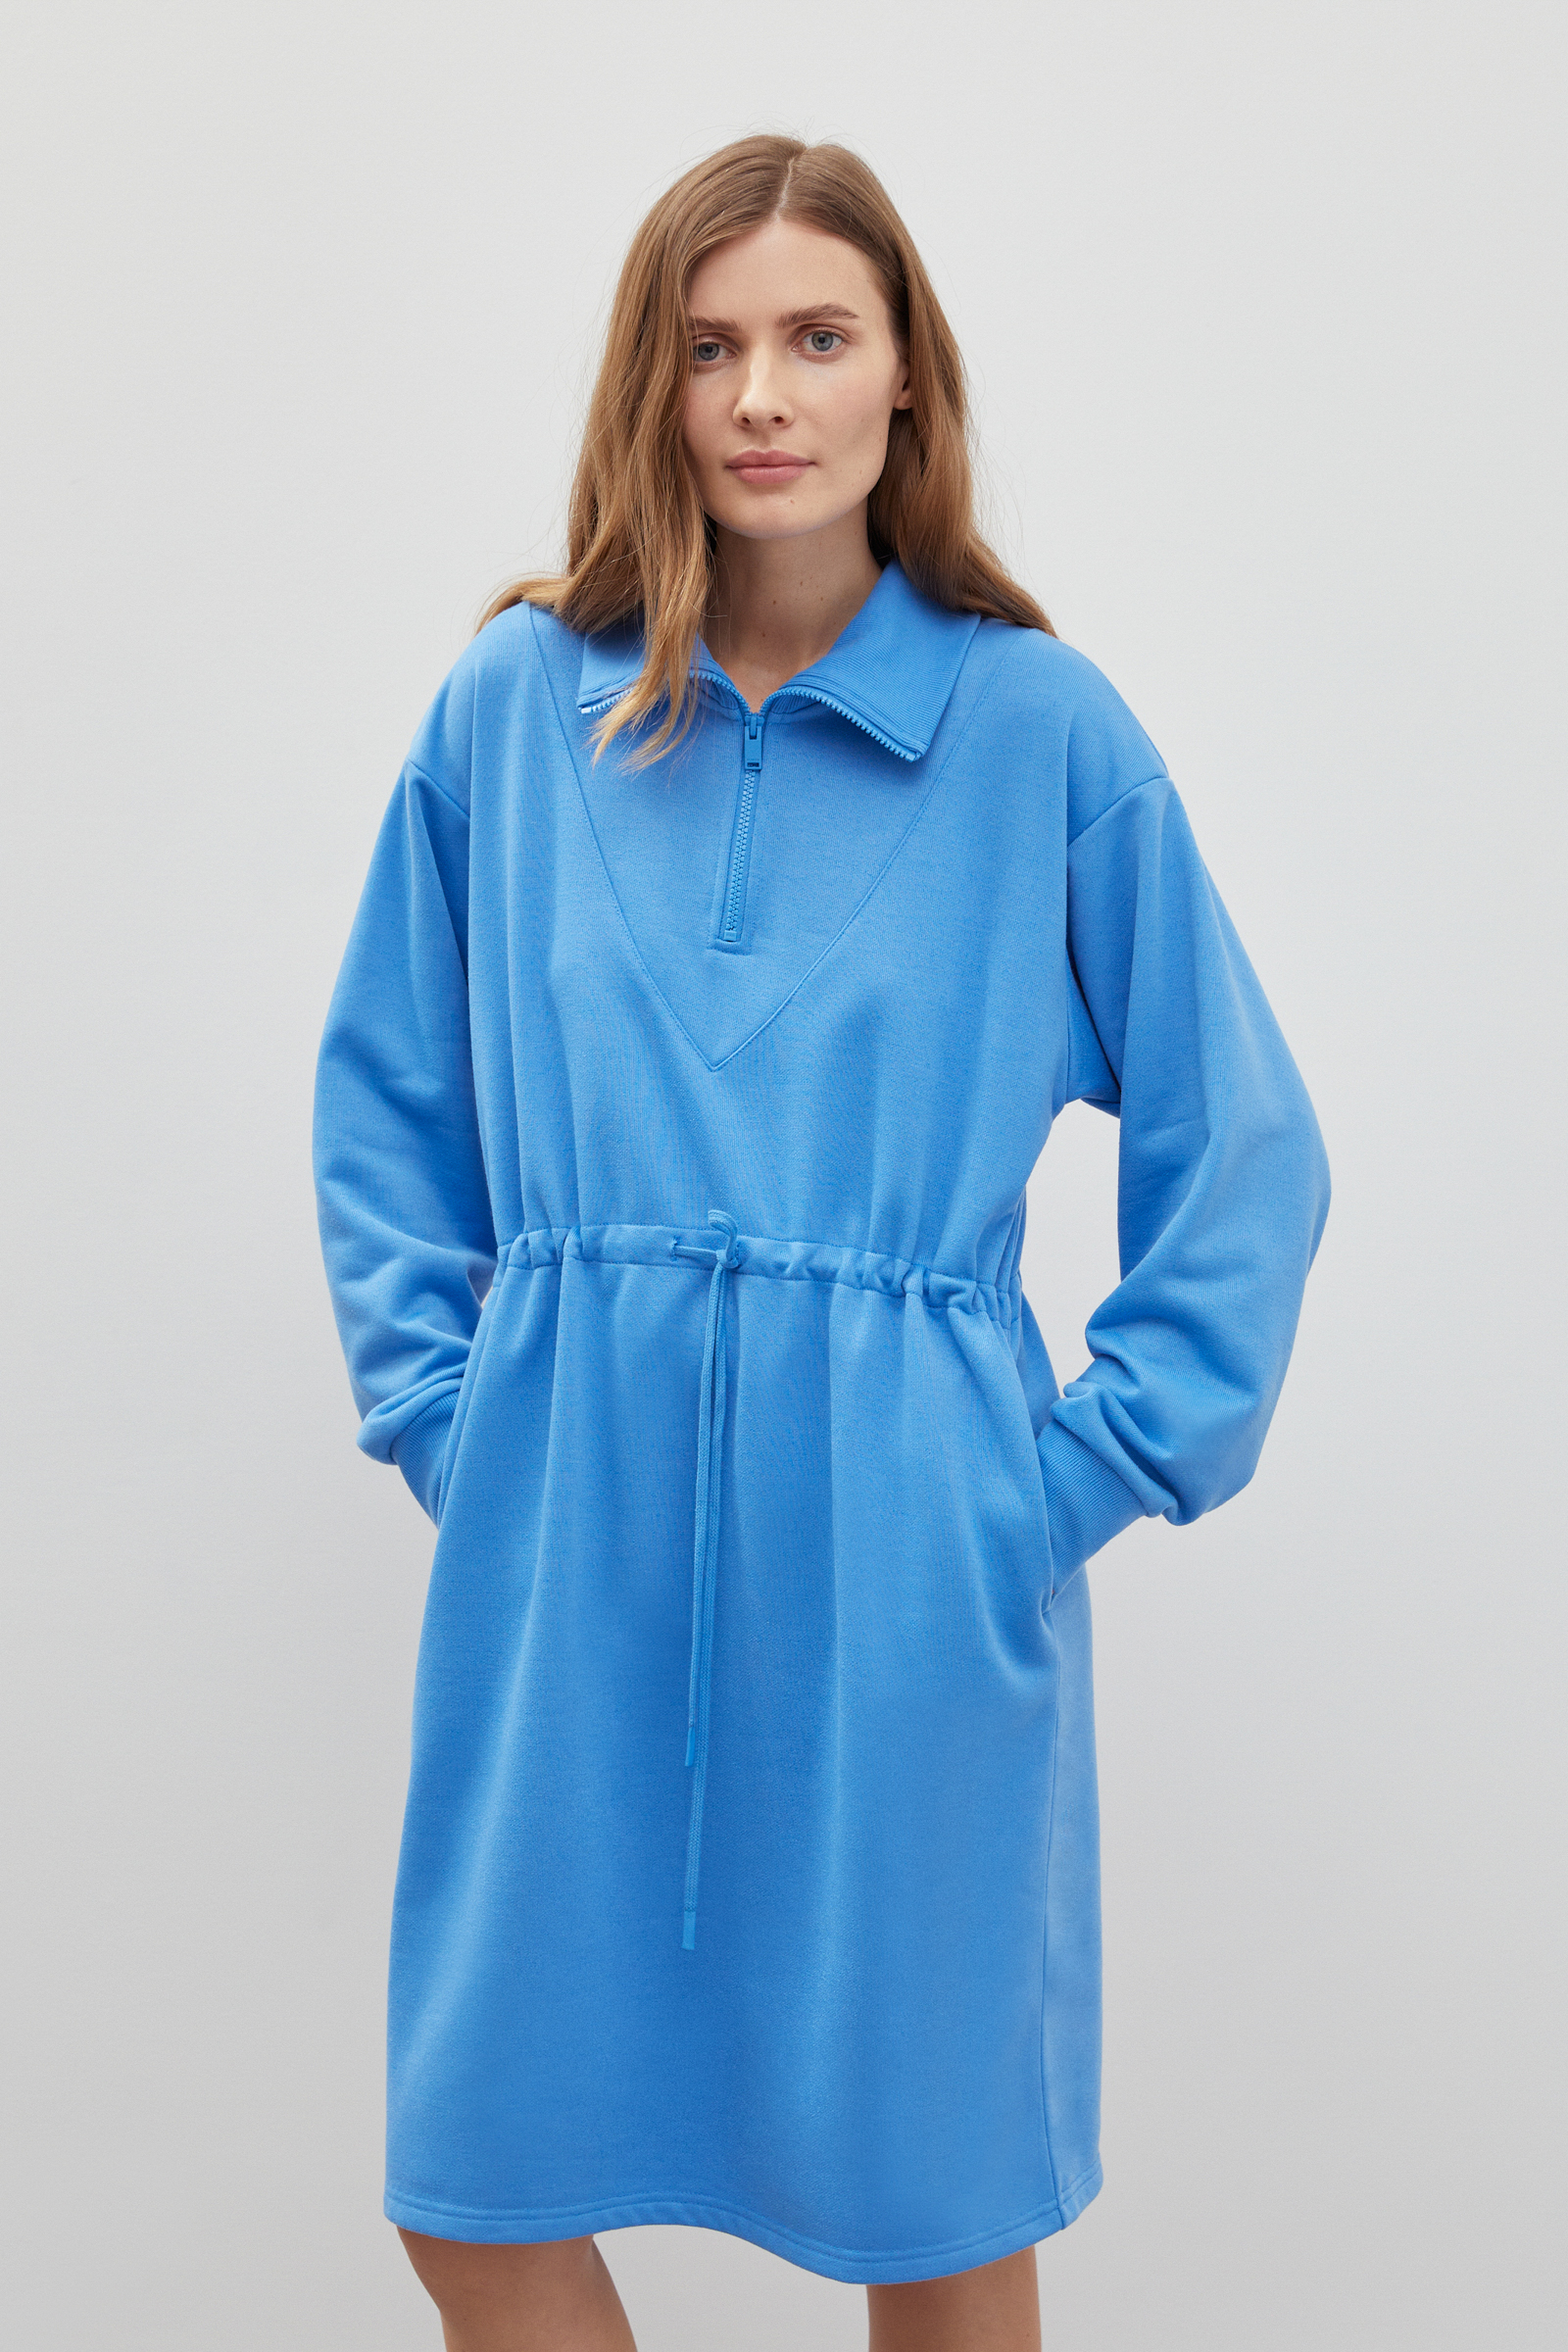 Платье женское Finn Flare FBD110188 голубое XS